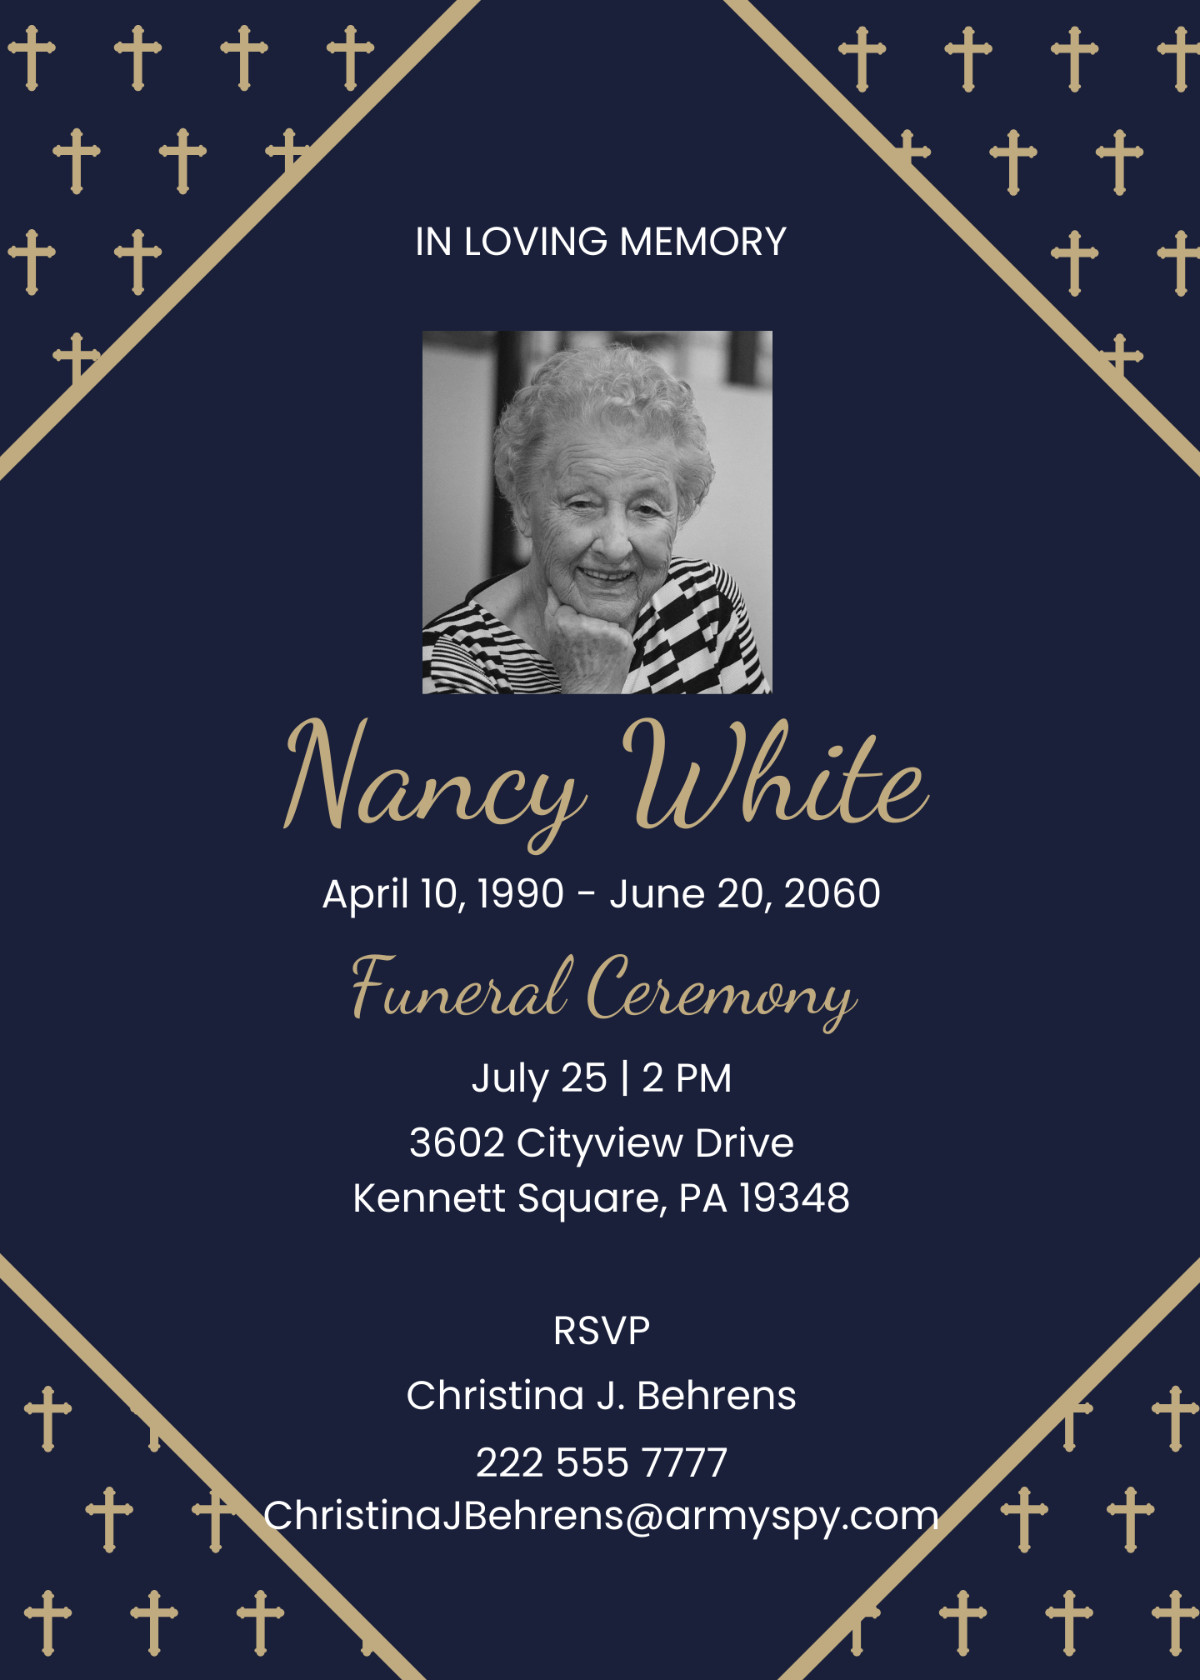 Funeral Memorial Invitation Card